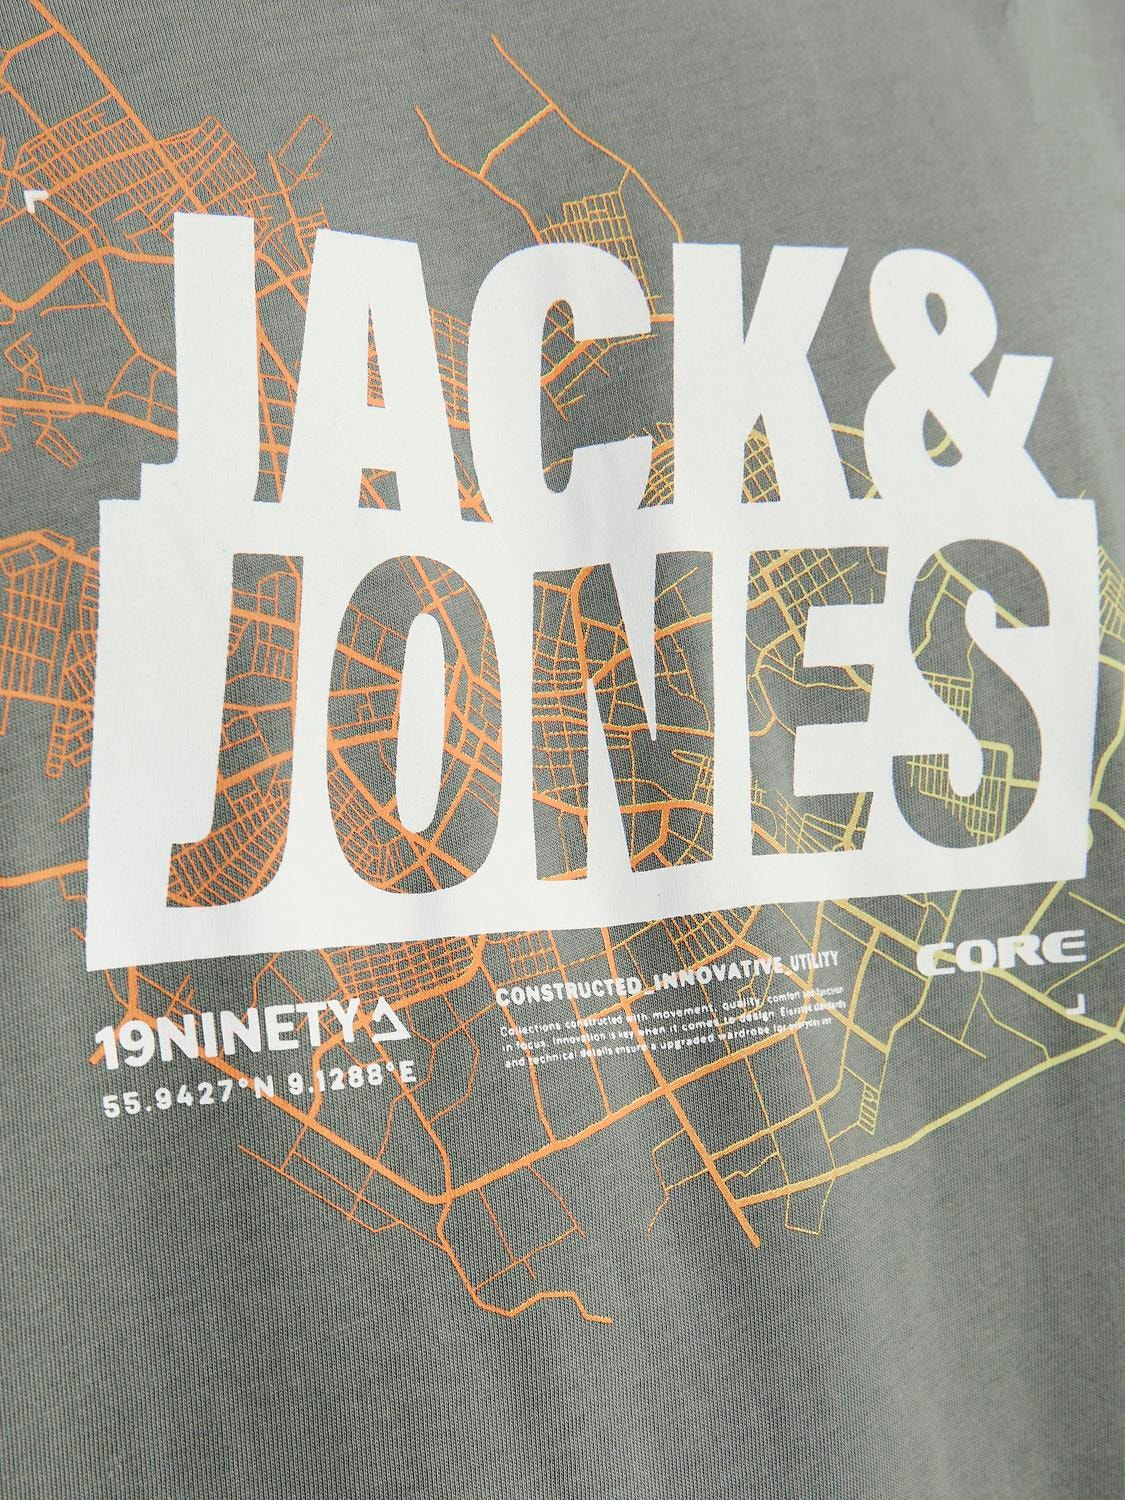 Jack & Jones Tryck Rundringning T-shirt -Agave Green - 12252376